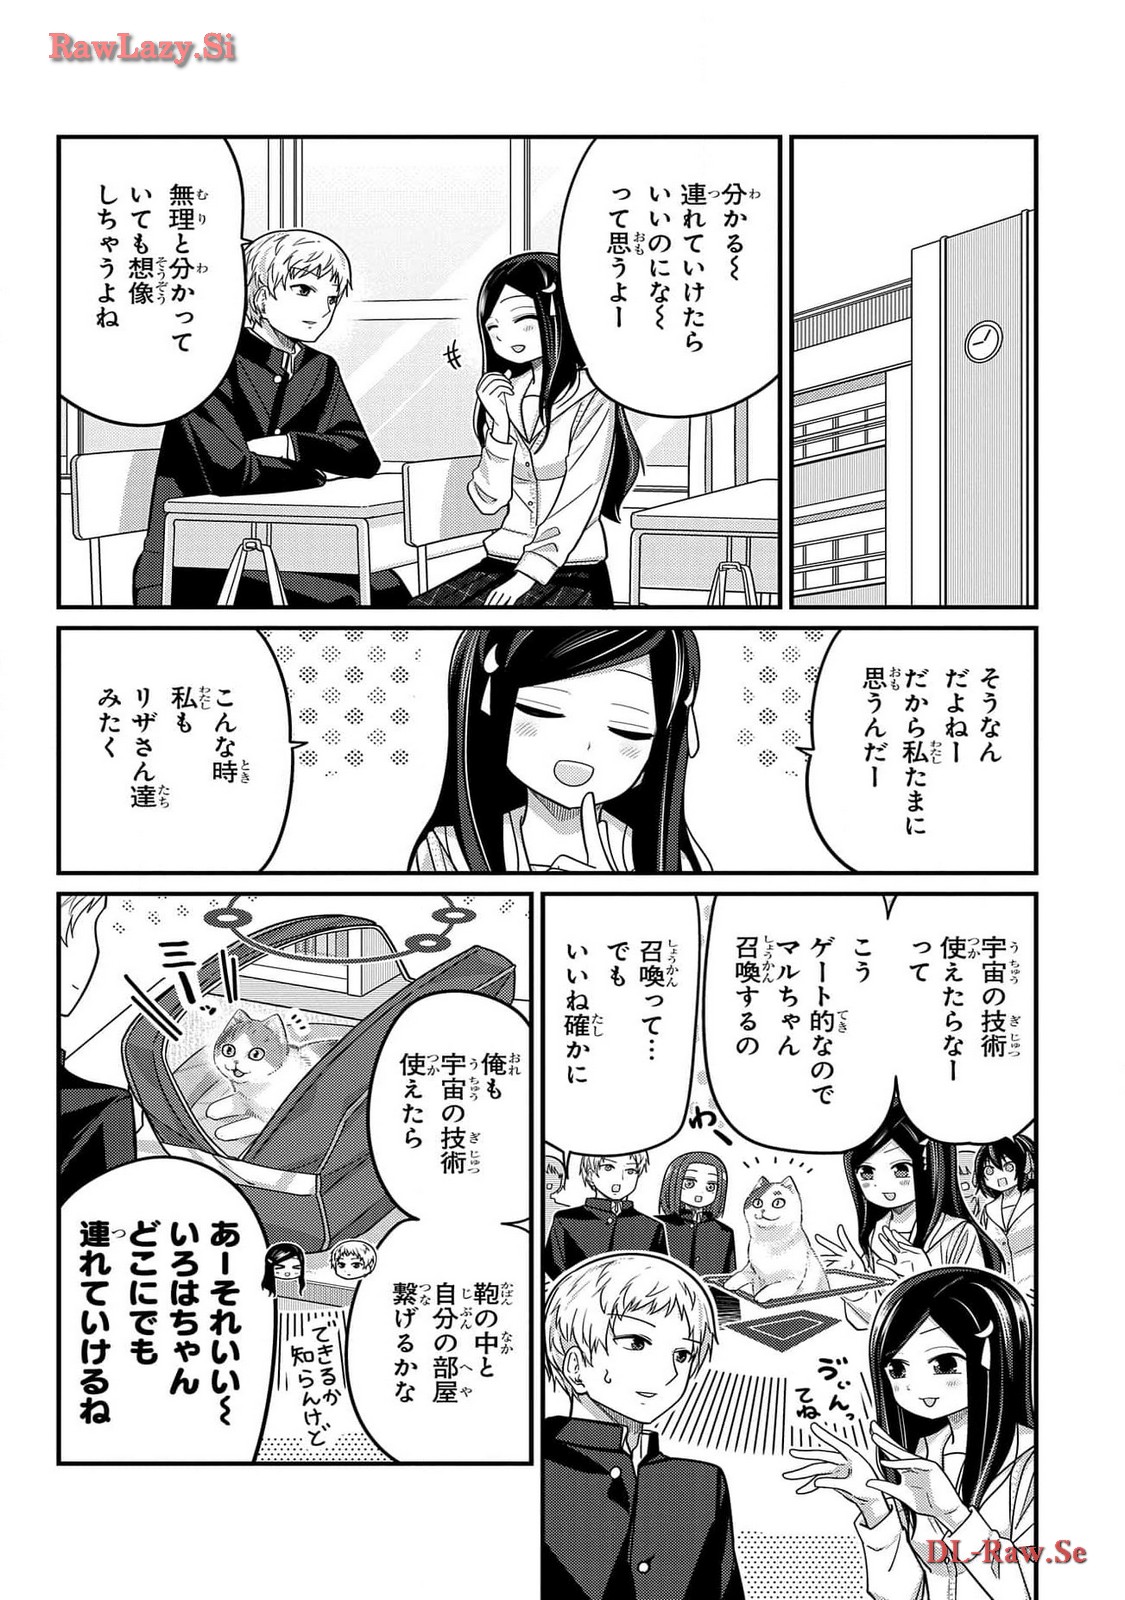 Kawaisugi Crisis - Chapter 97 - Page 10